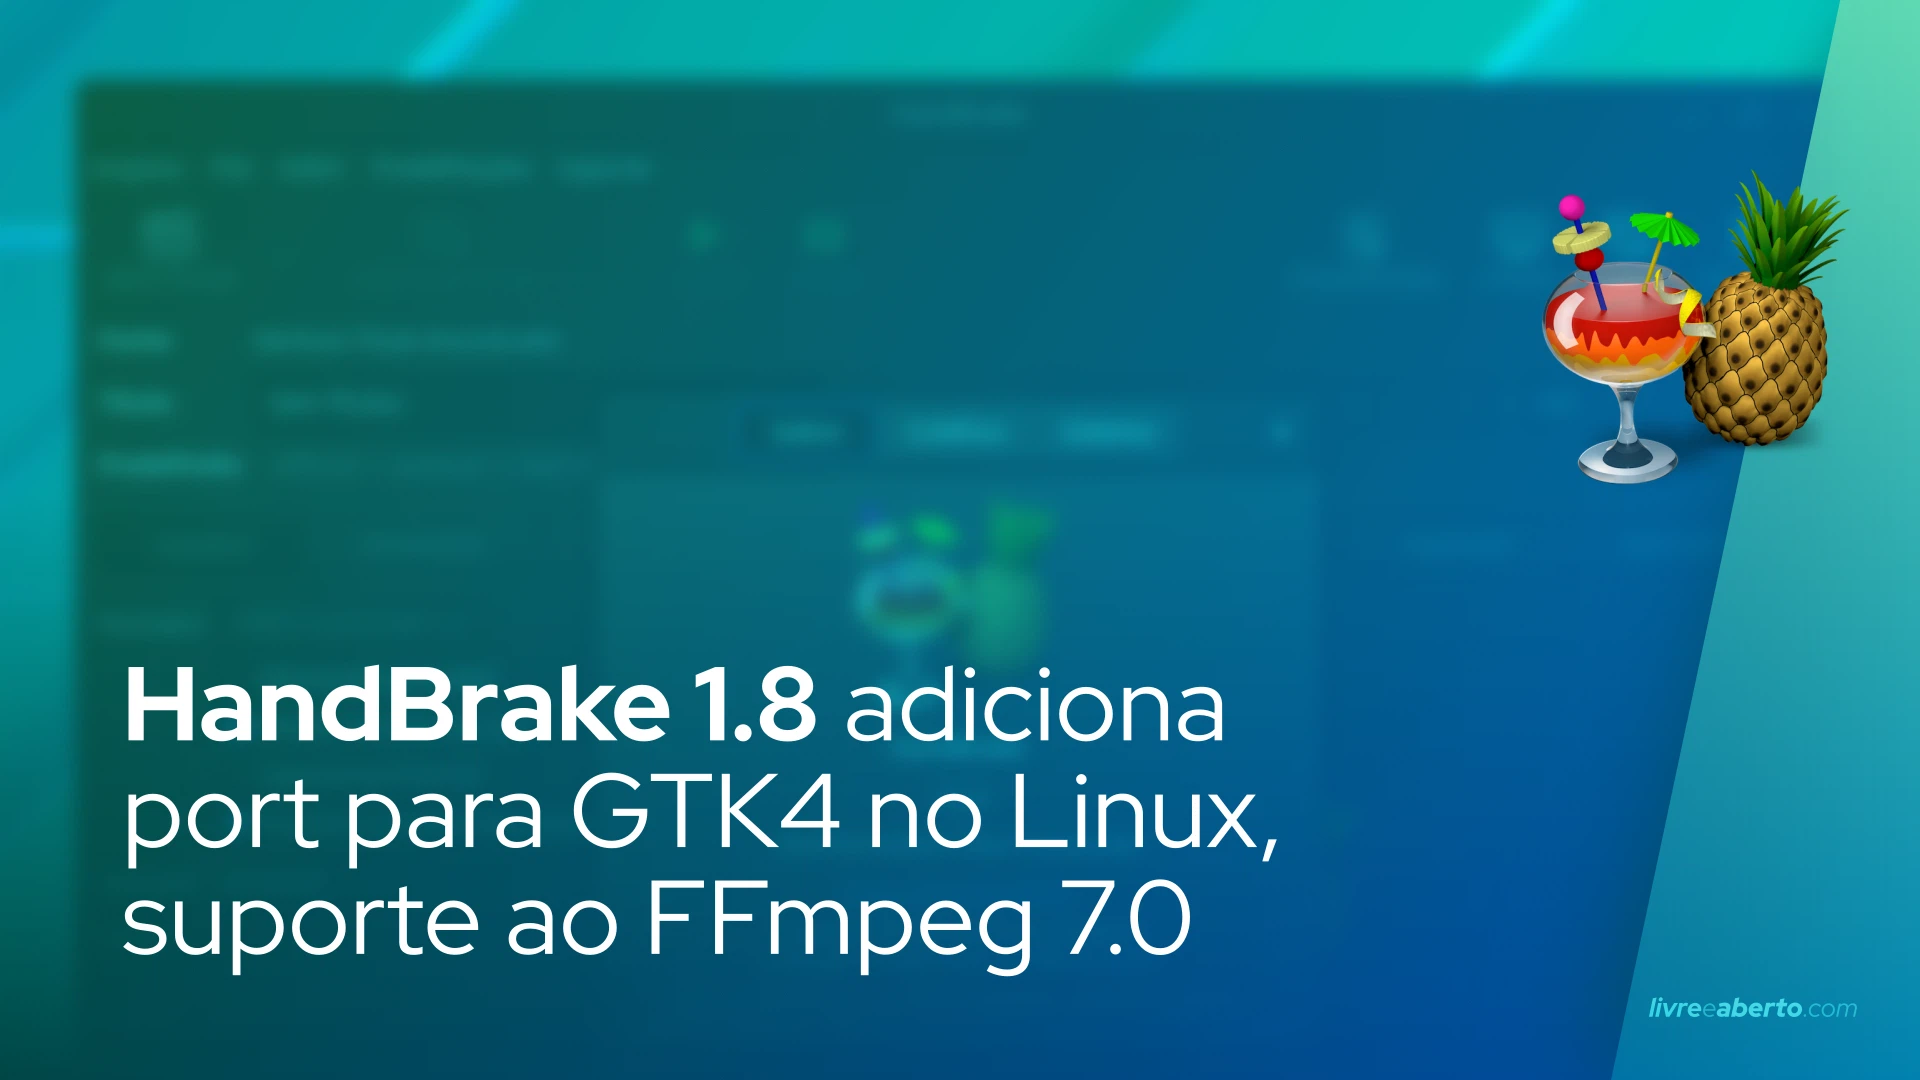 HandBrake 1.8 adiciona port para GTK4 no Linux, suporte ao FFmpeg 7.0